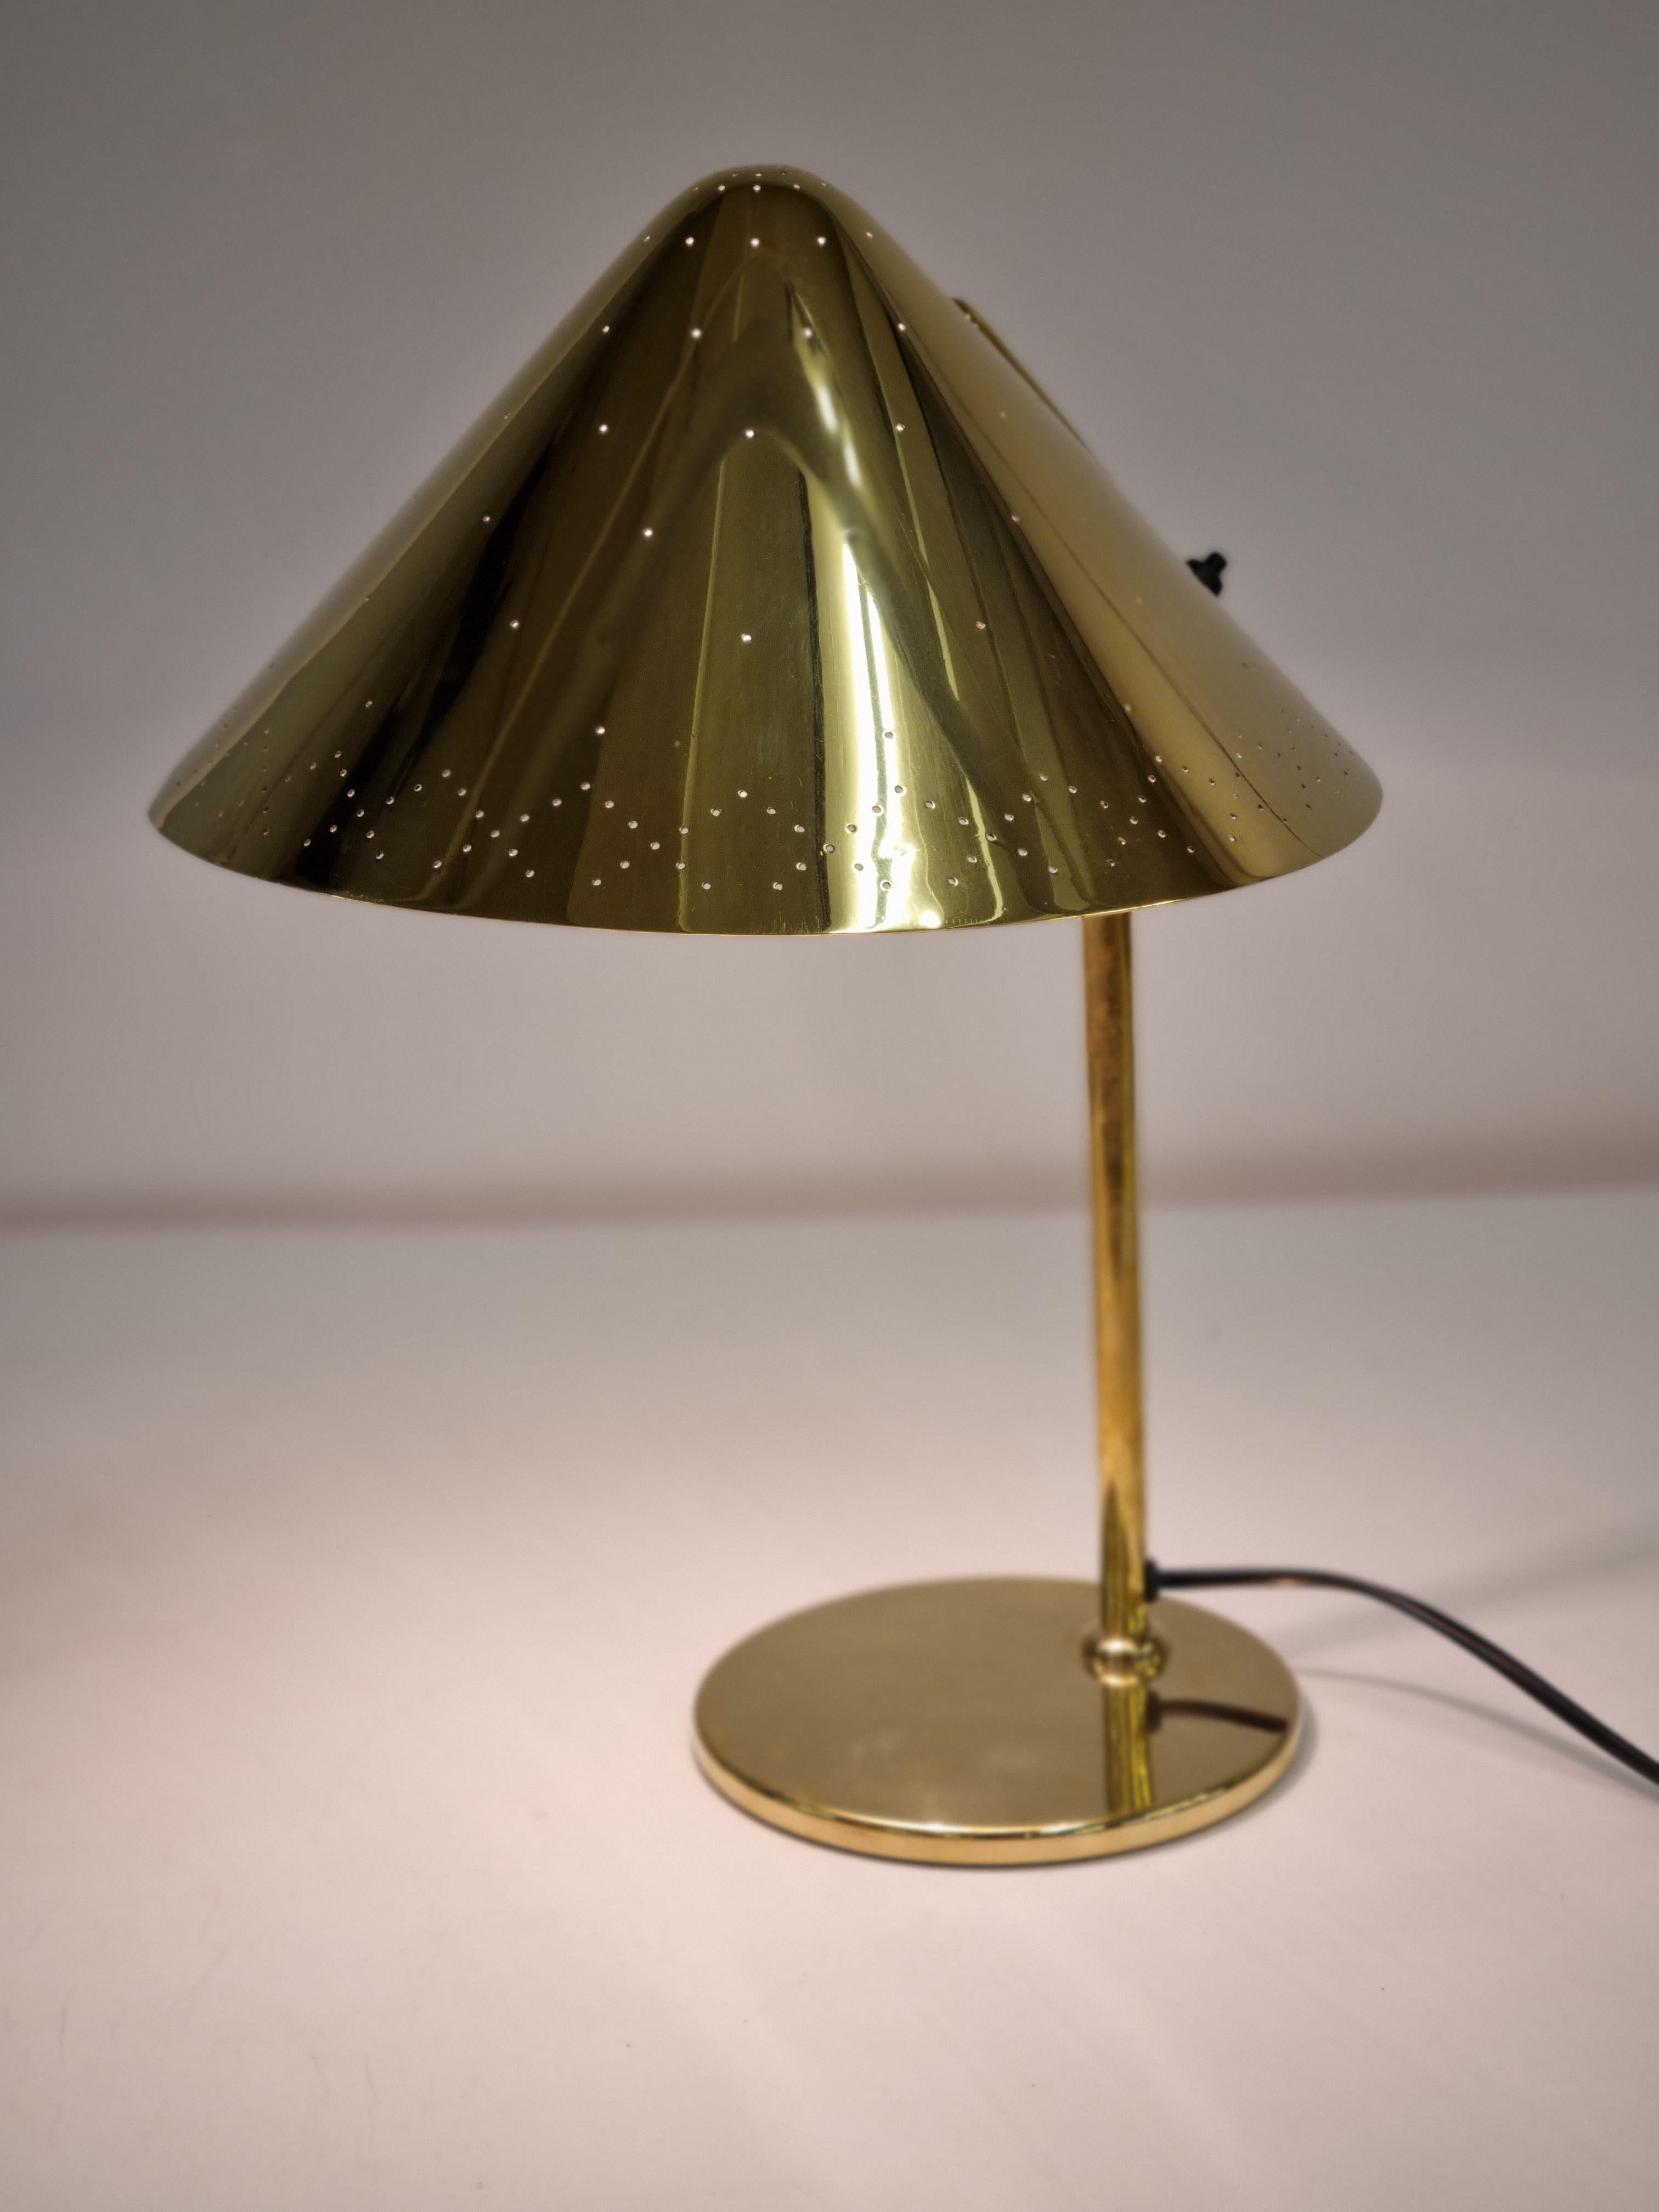 Eine äußerst seltene Auftragslampe von Paavo Tynell. Diese Leuchte weist Merkmale mehrerer Modelle auf, hat jedoch einen einzigartigen, gelochten, kegelförmigen Schirm, der bei keinem anderen Standardmodell zu finden ist. Ein ähnliches Beispiel